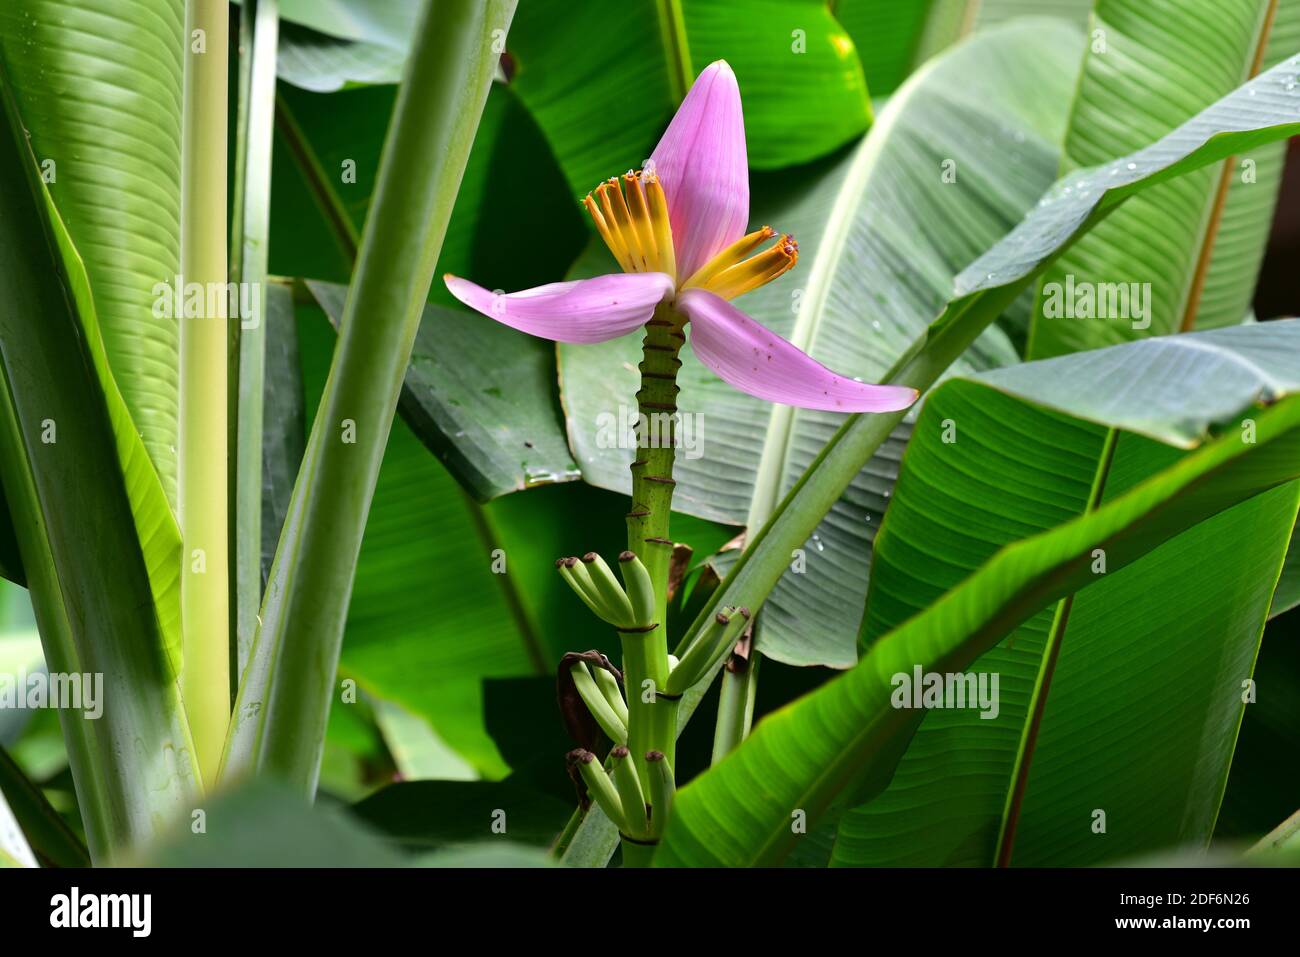 La banane à fleurs (Musa ornata) est une plante ornementale vivace originaire du sud-est de l'Asie. Fleurs et fruits. Cette photo a été prise en Thaïlande. Banque D'Images